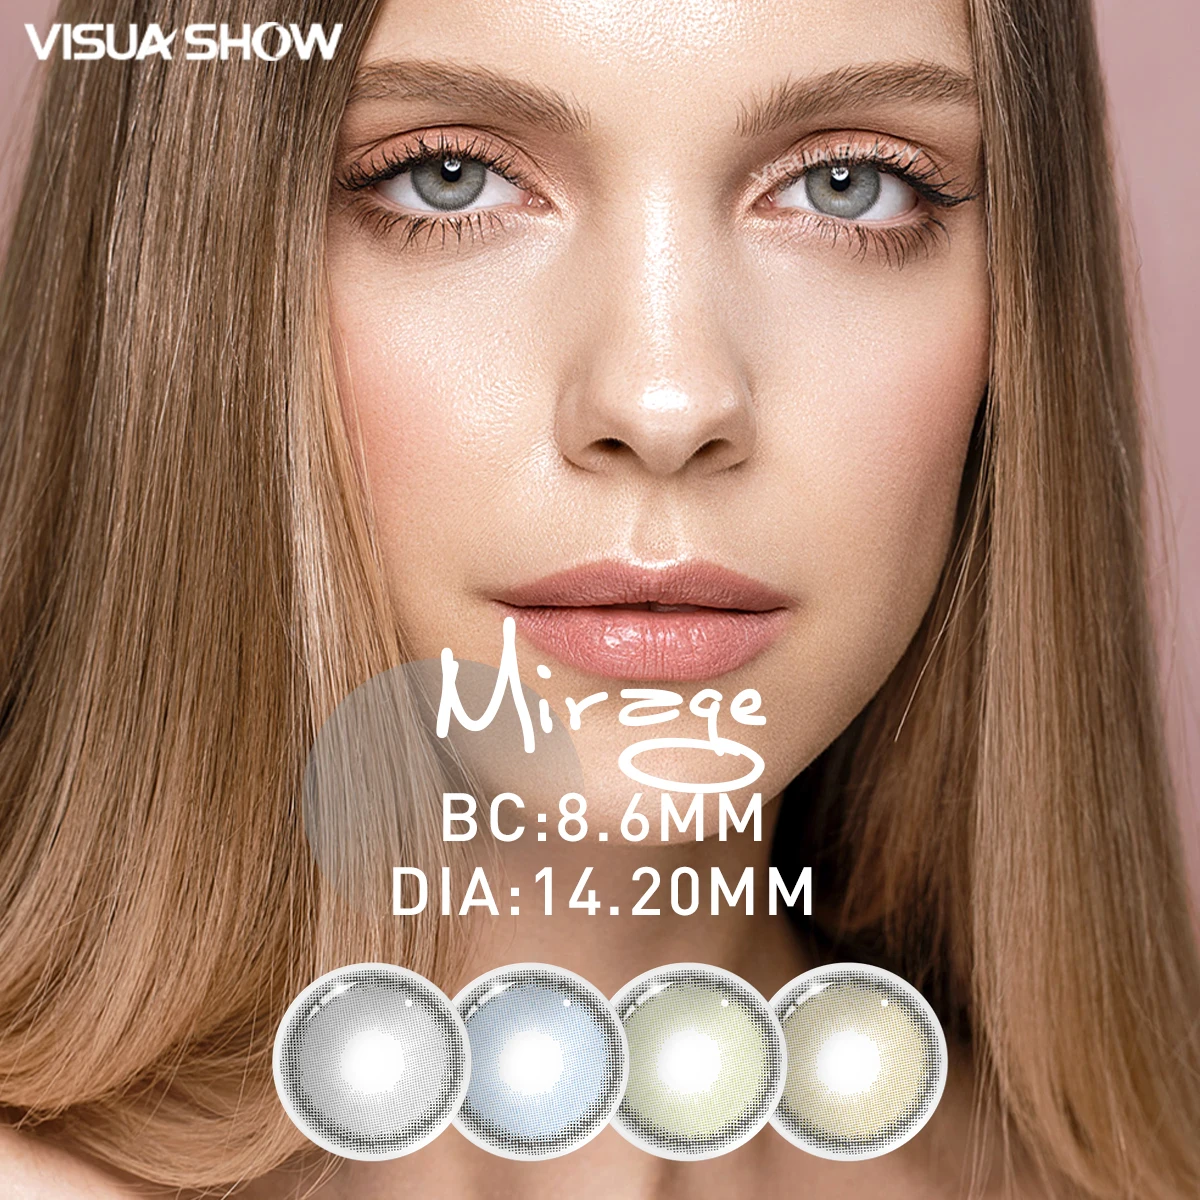 

Цветные контактные линзы VISUASHOW Mirage, контактные линзы для близорукости с диоптриями, натуральные контактные линзы для глаз, 2 шт. на весь год